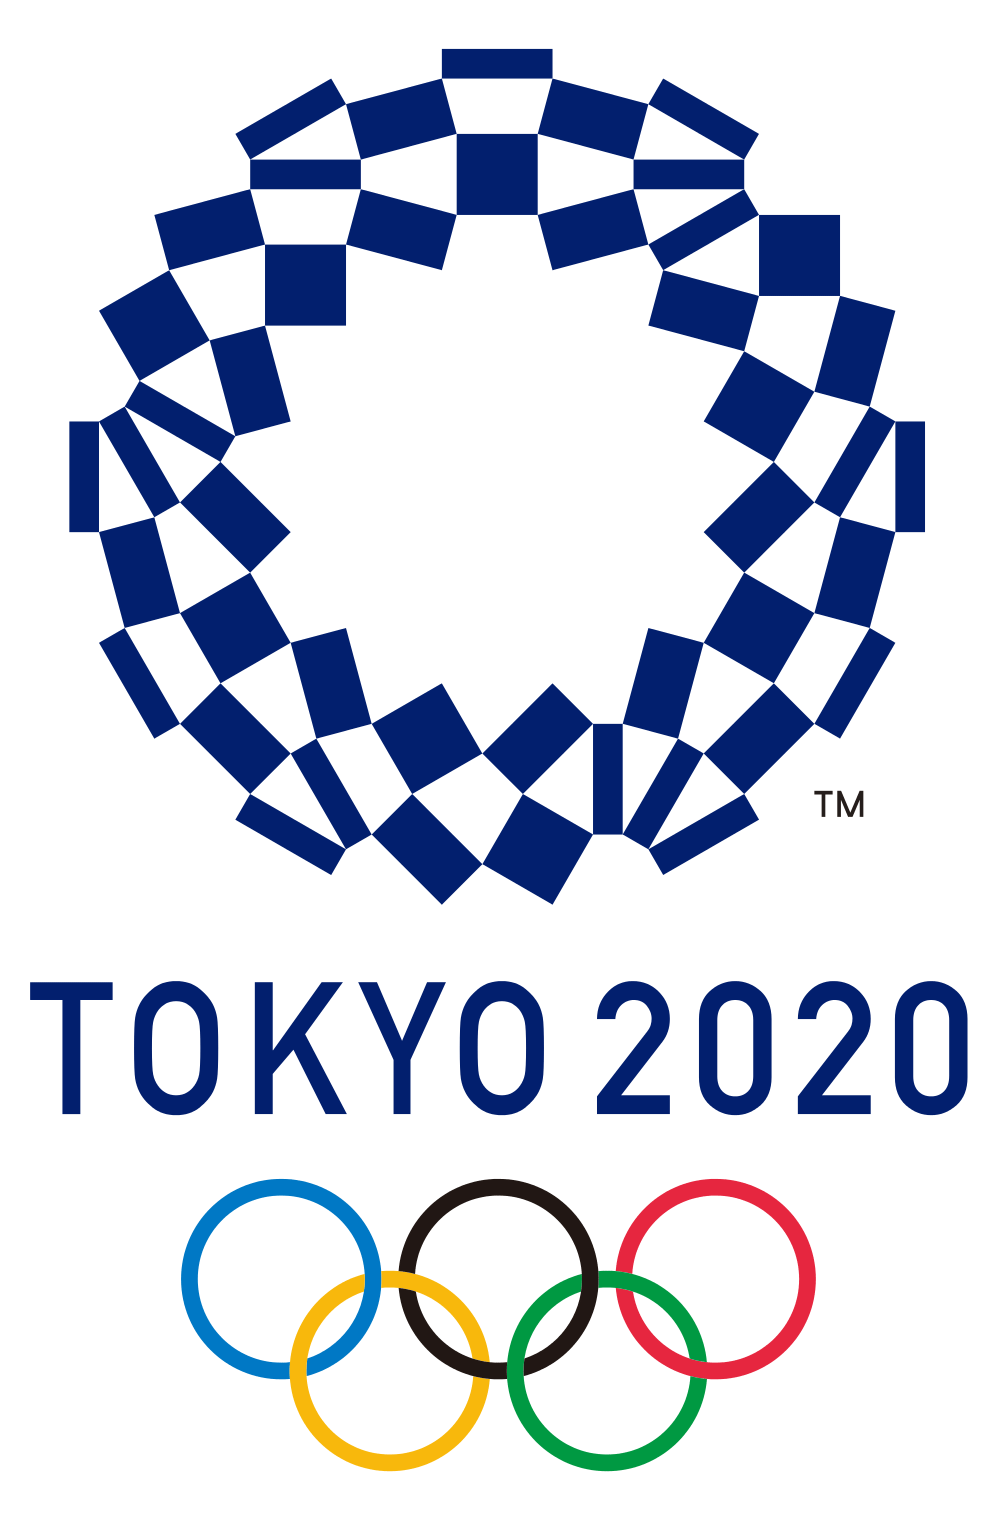 Tokyo 2020 Olympics logo. Emblem, Olympic logo